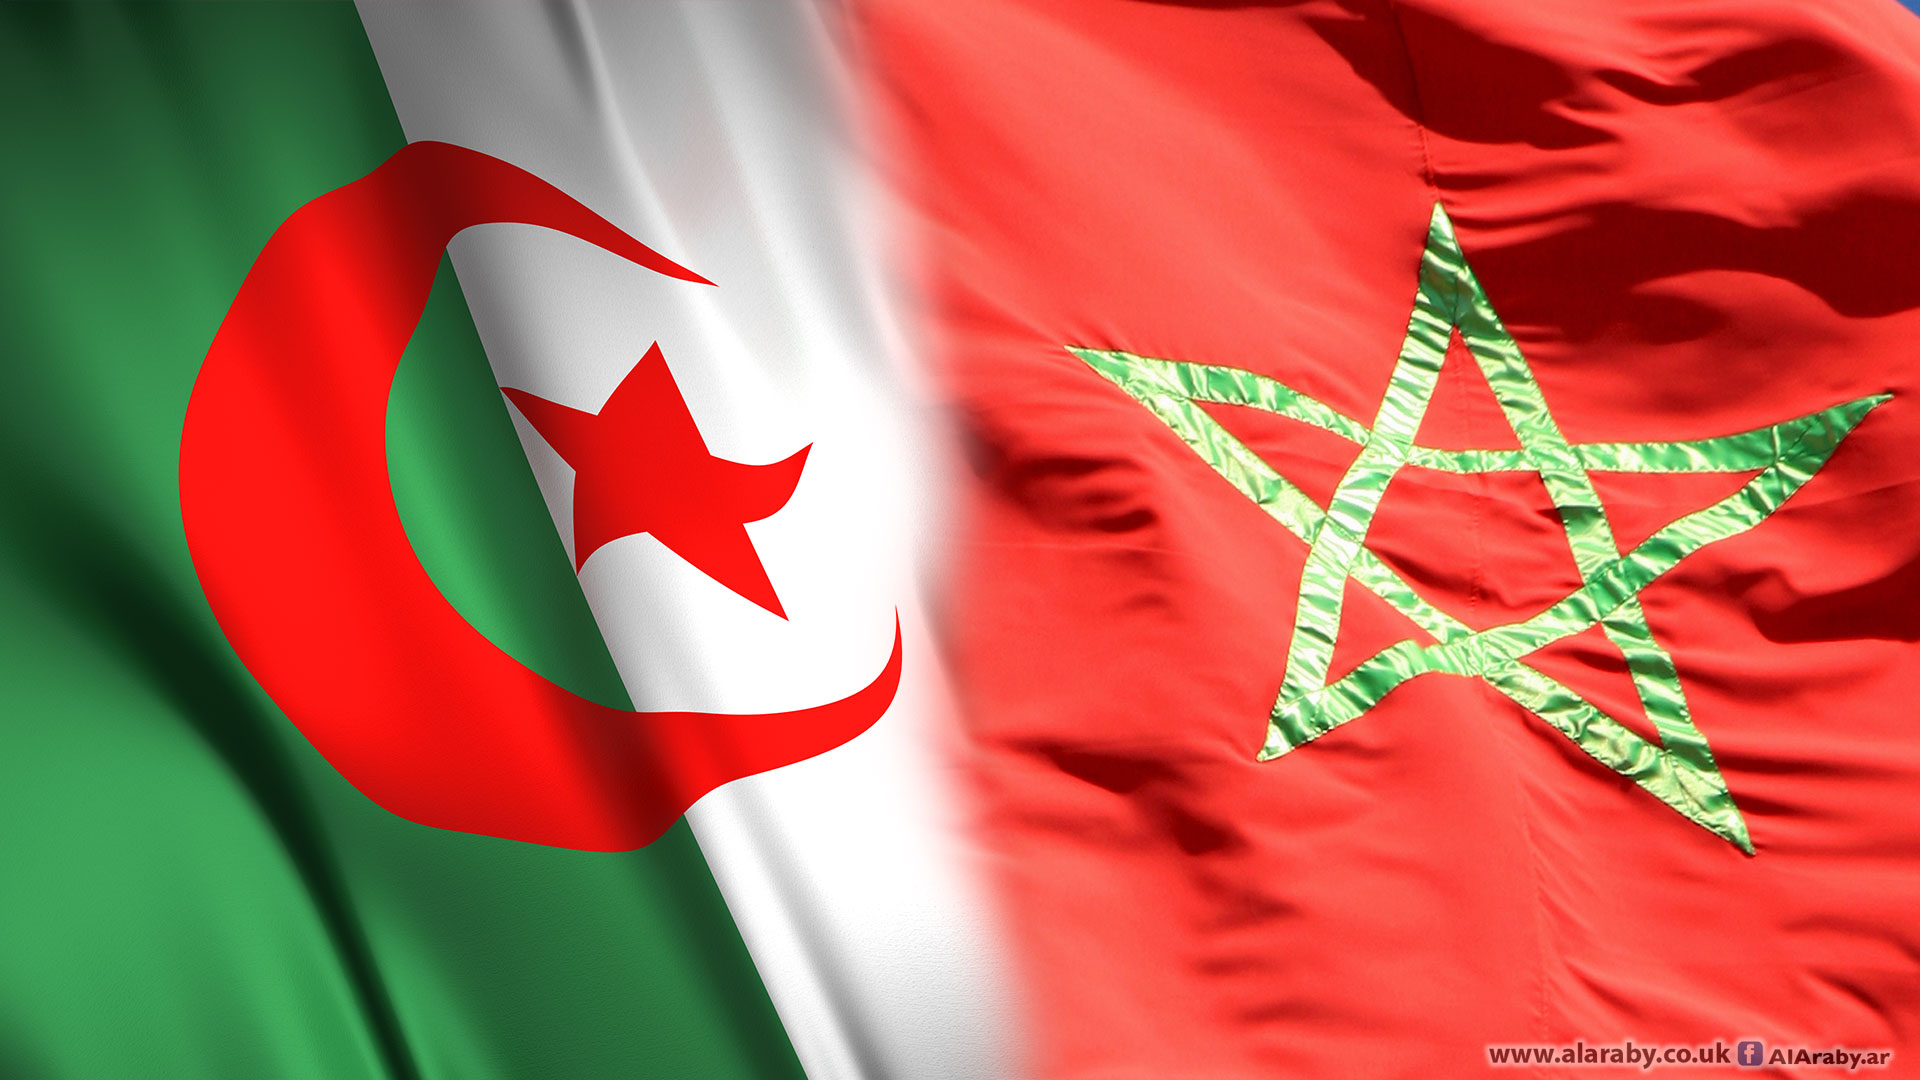 الجزائر ستتوقف عن امداد المغرب بالغاز